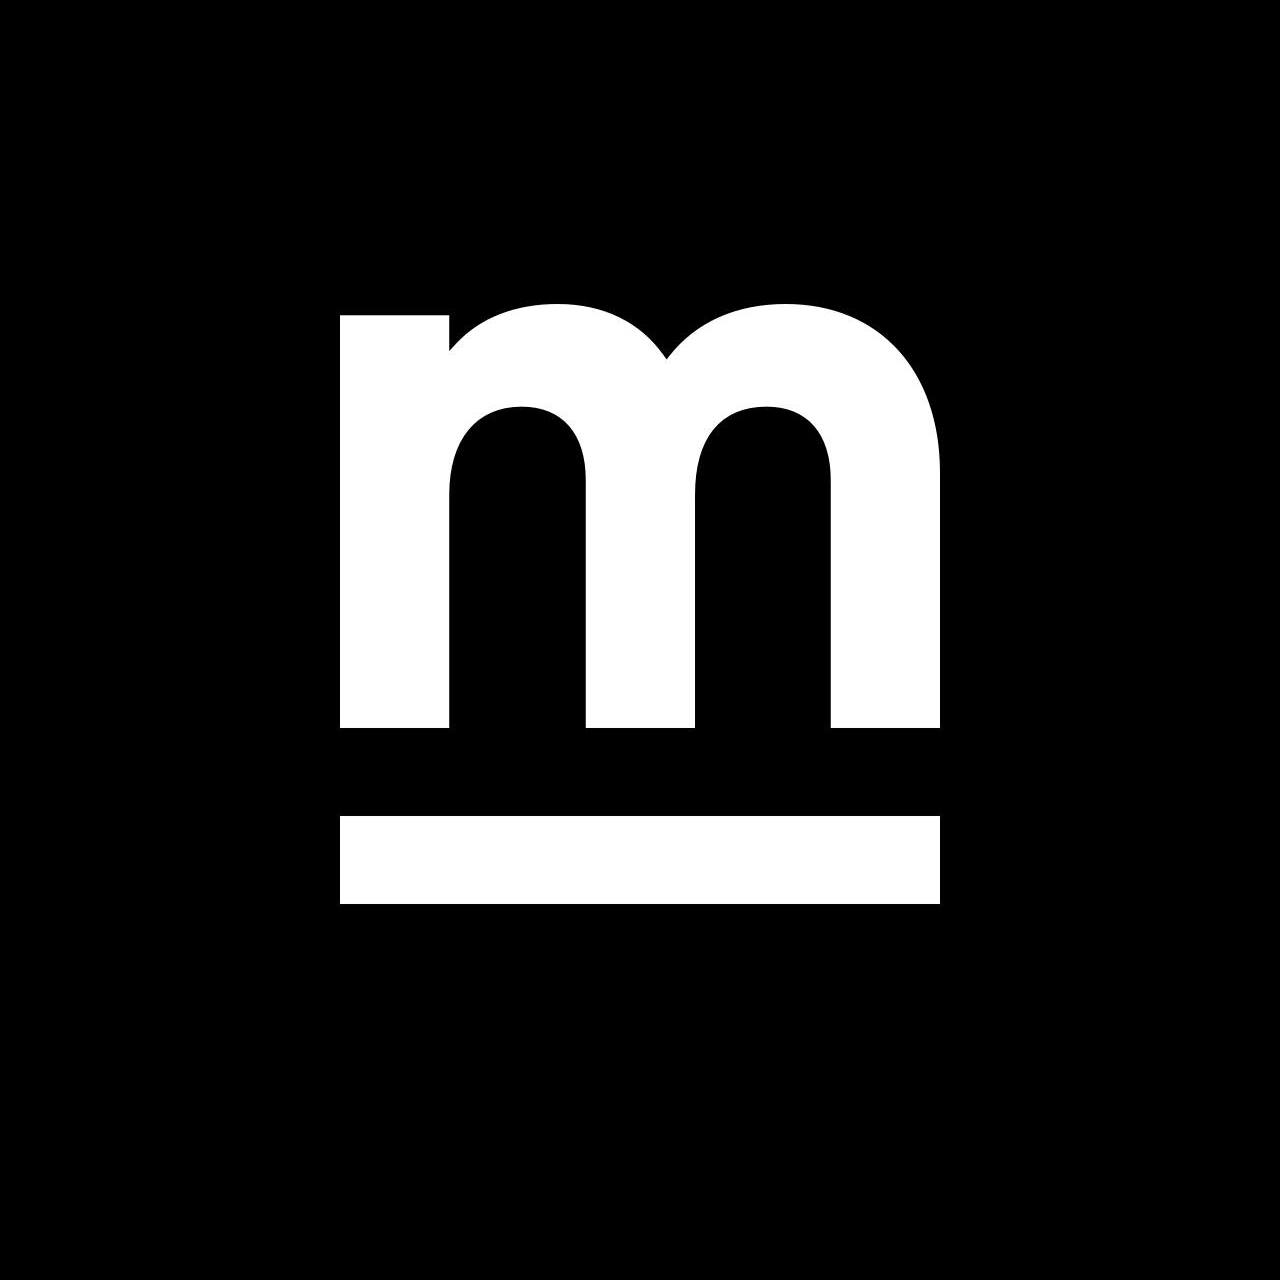 Company logo of Mabbly